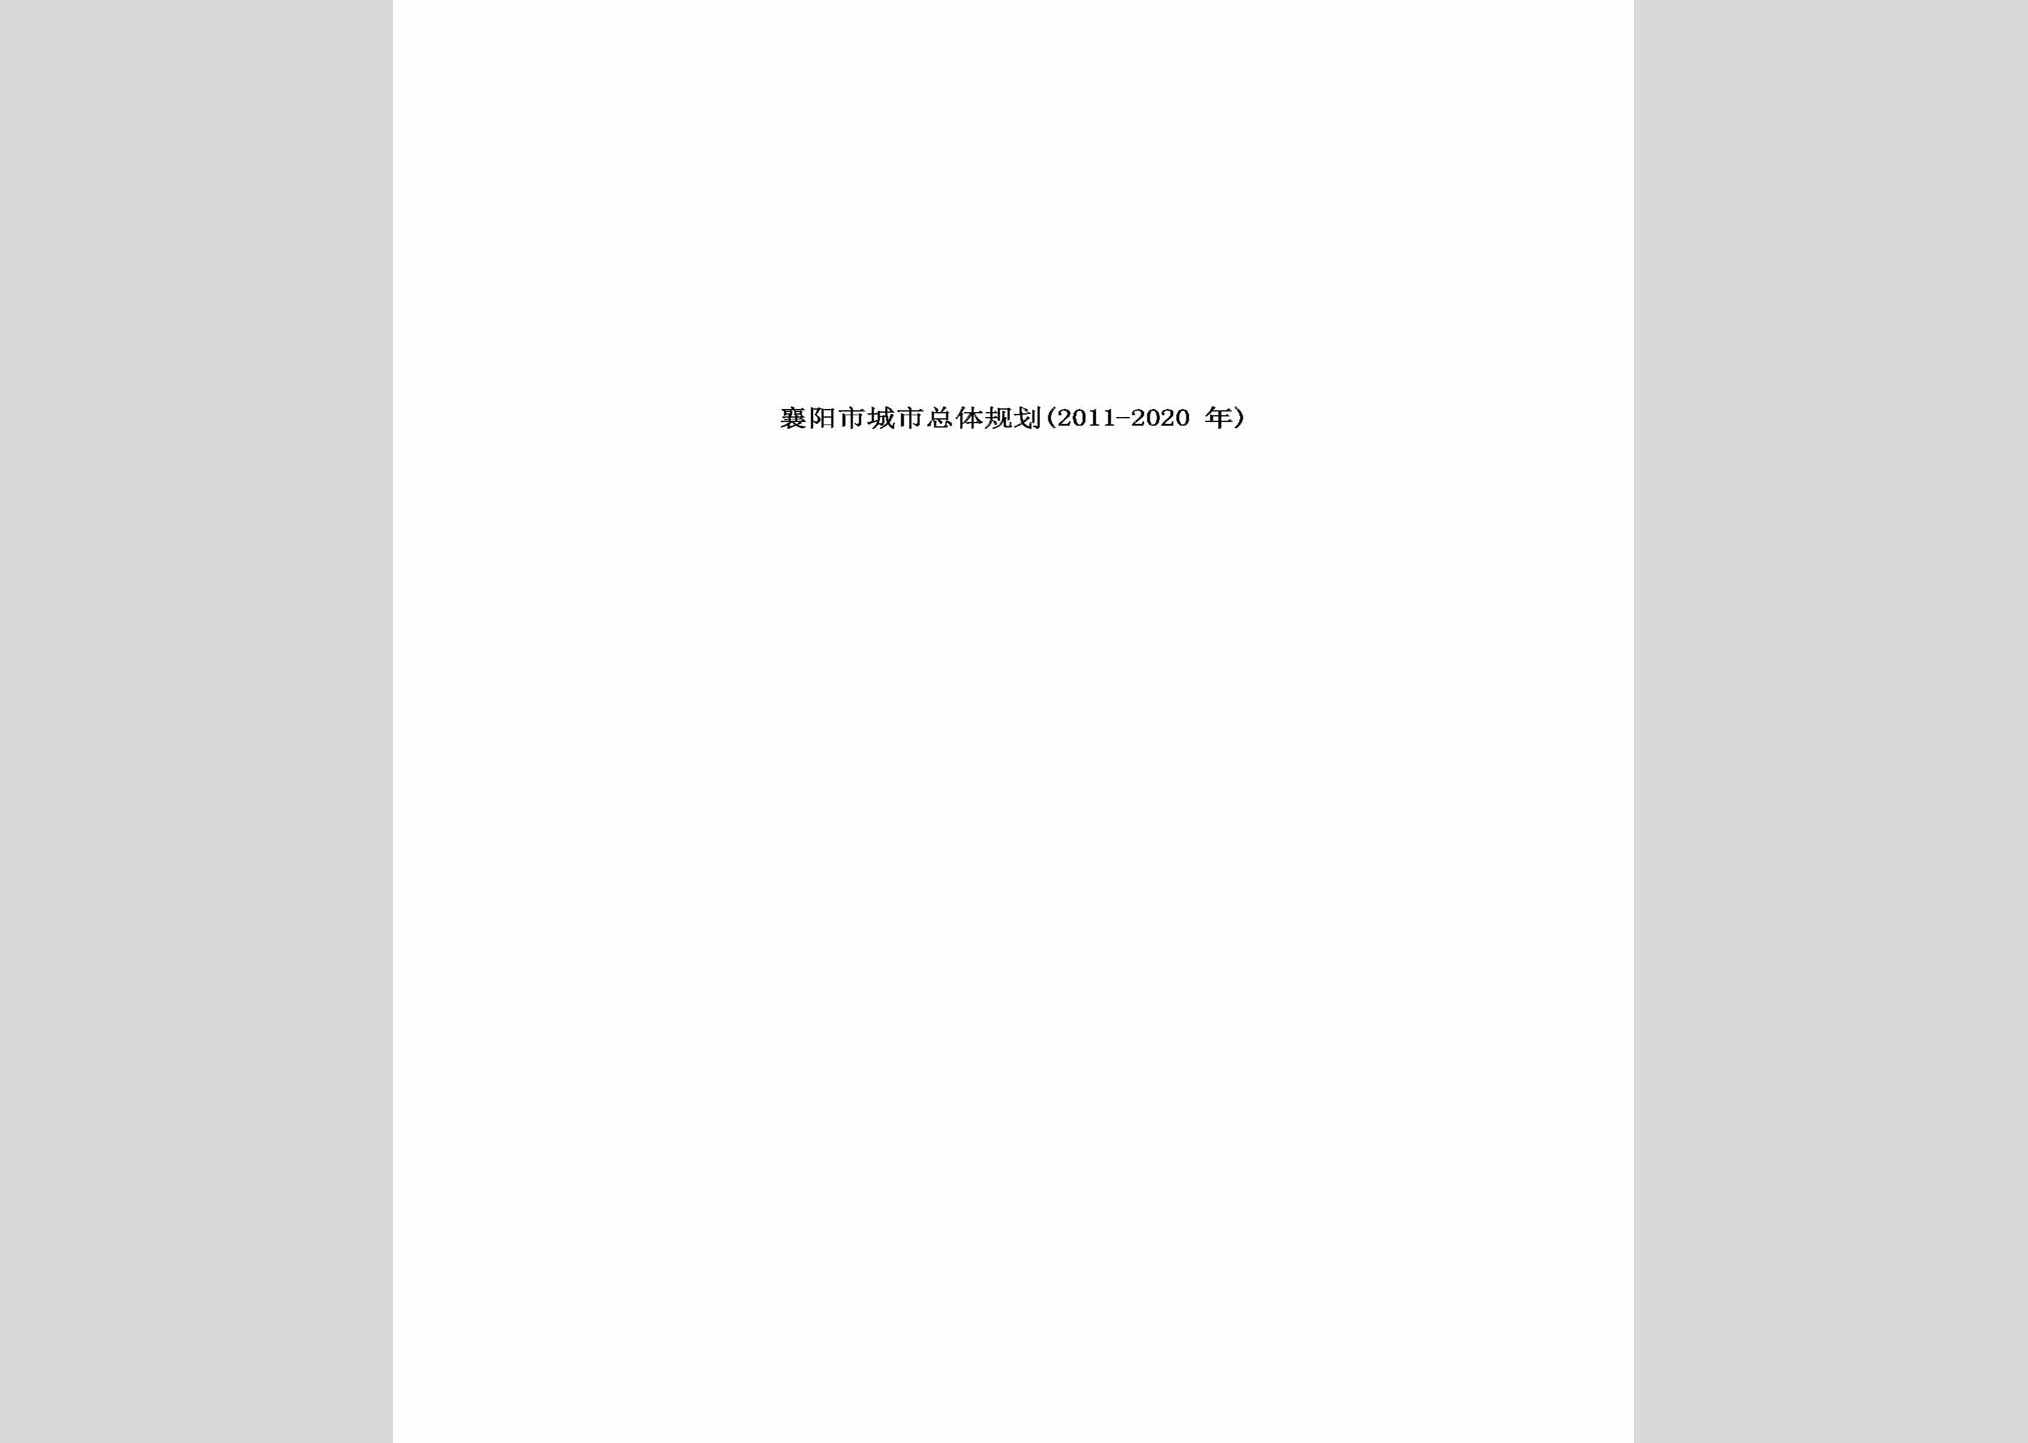 XYZTGH-2011-2020：襄阳市城市总体规划(2011-2020年)